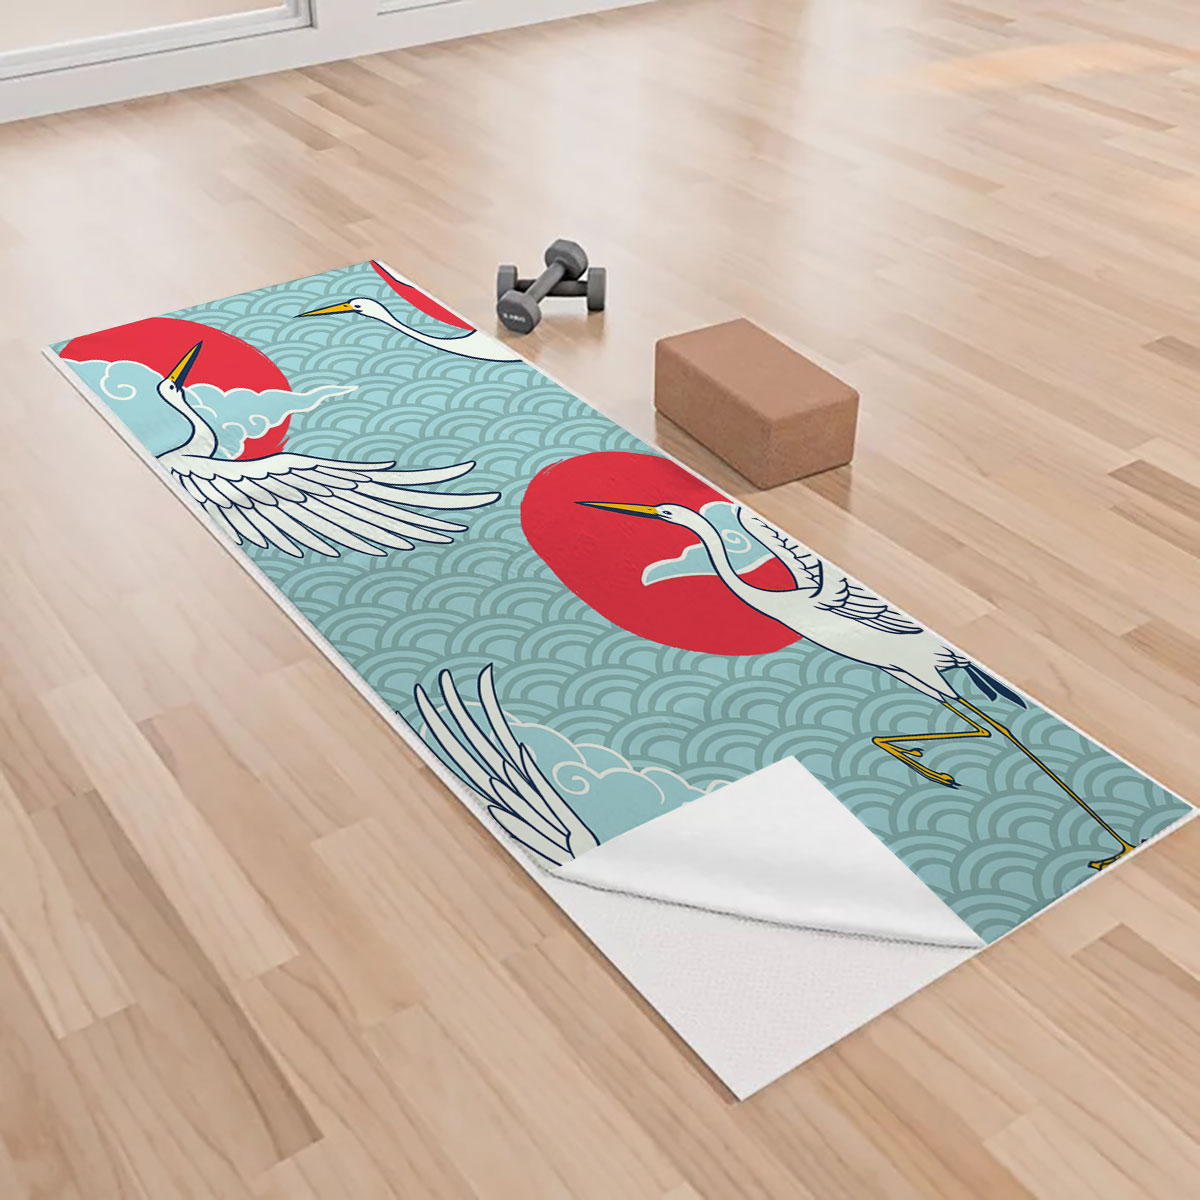 Iconic Flying Heron Art Yoga Towels